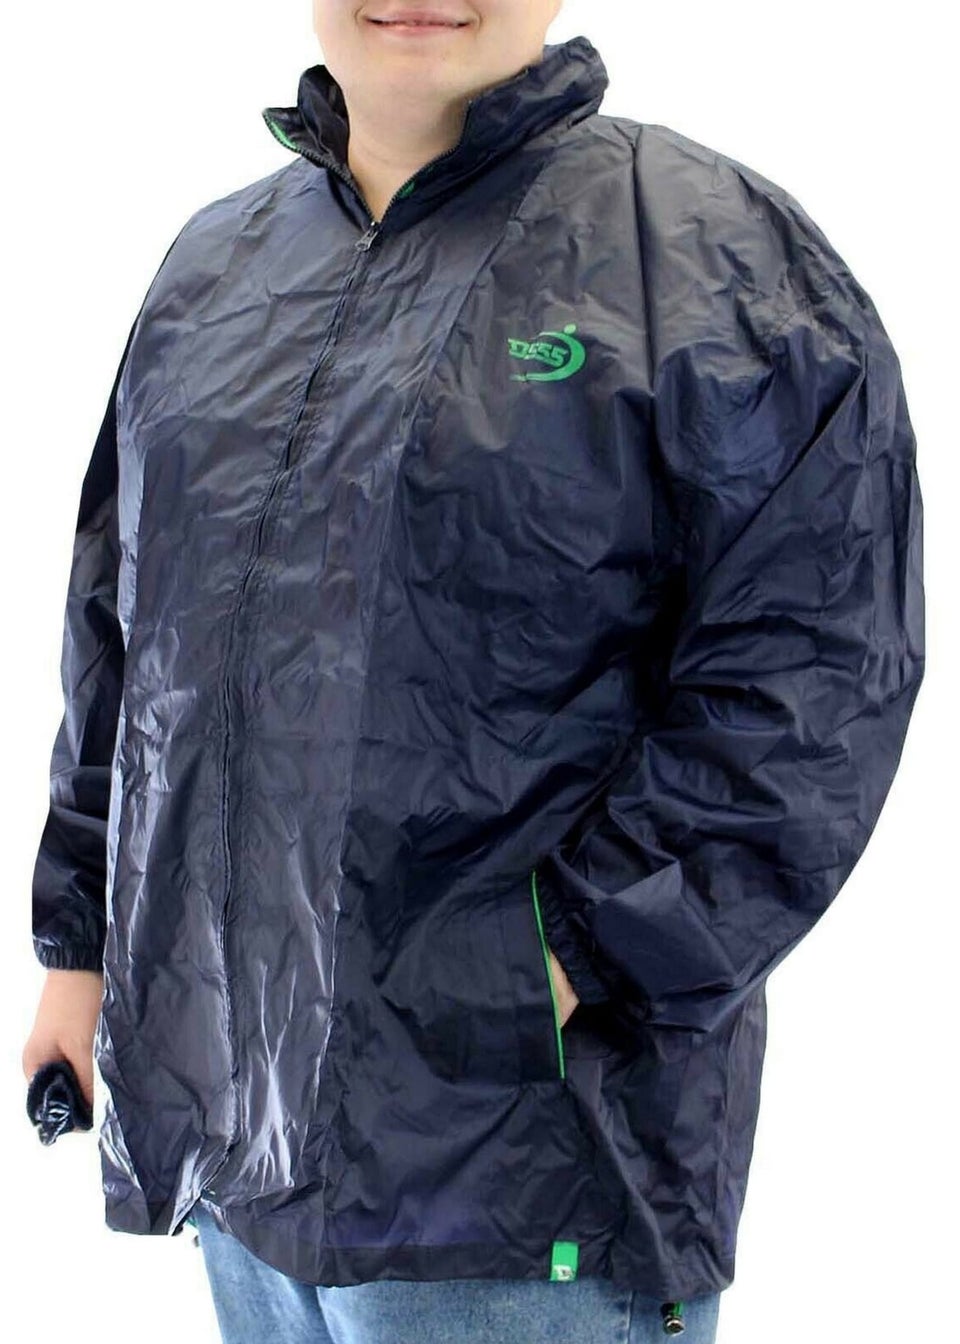 Duke Navy Zac Kingsize Packaway Weather Proof Rain Jacket